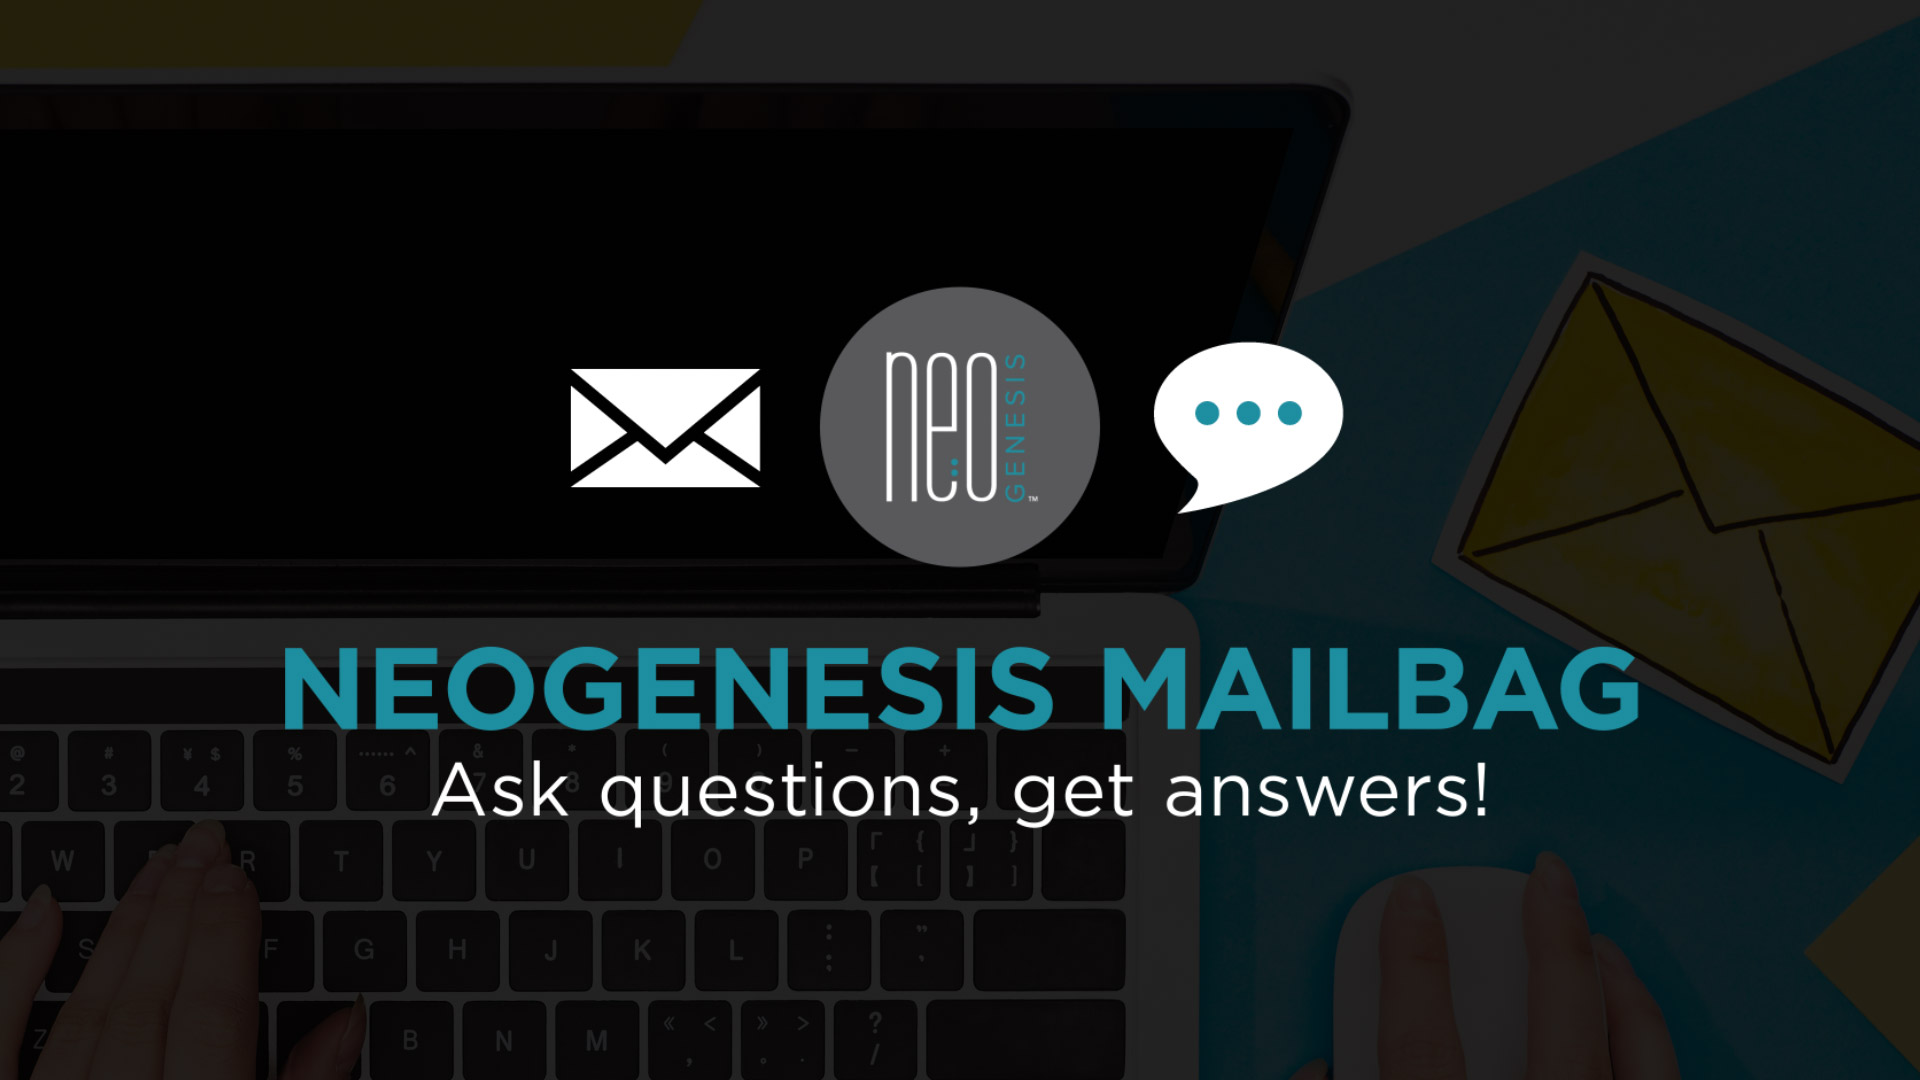 NeoGenesis Mailbag - FAQs